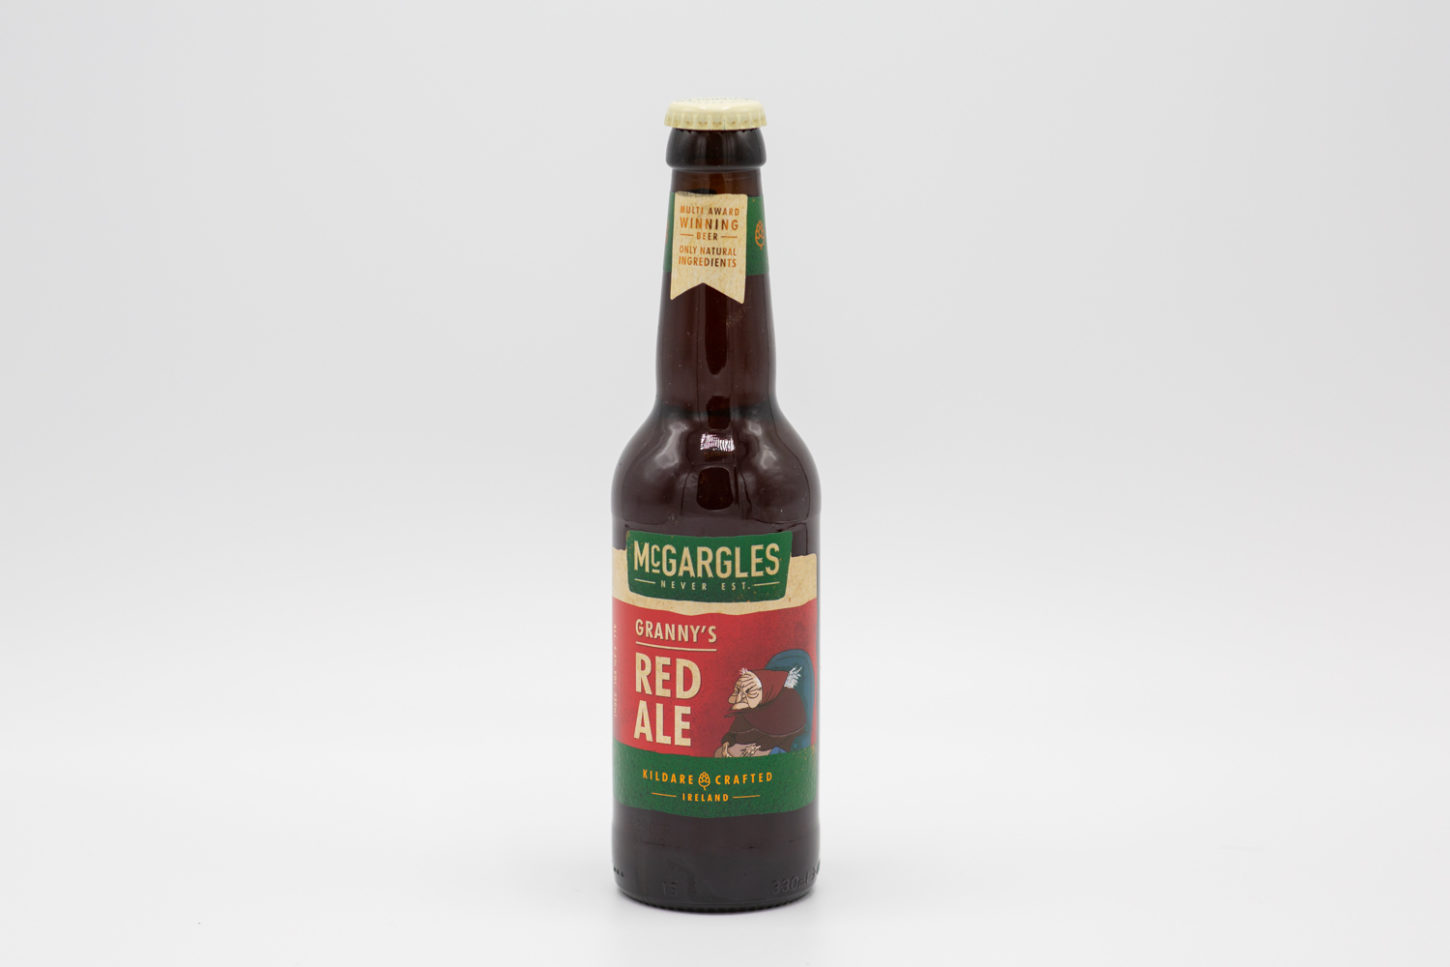 En recension av det Irländska Ale ölet Mcgargles Granny's Red Ale från bryggeriet Rye River Brewing Company i Dublin. Fotograf: Thomas Näslund på affluenza.se.